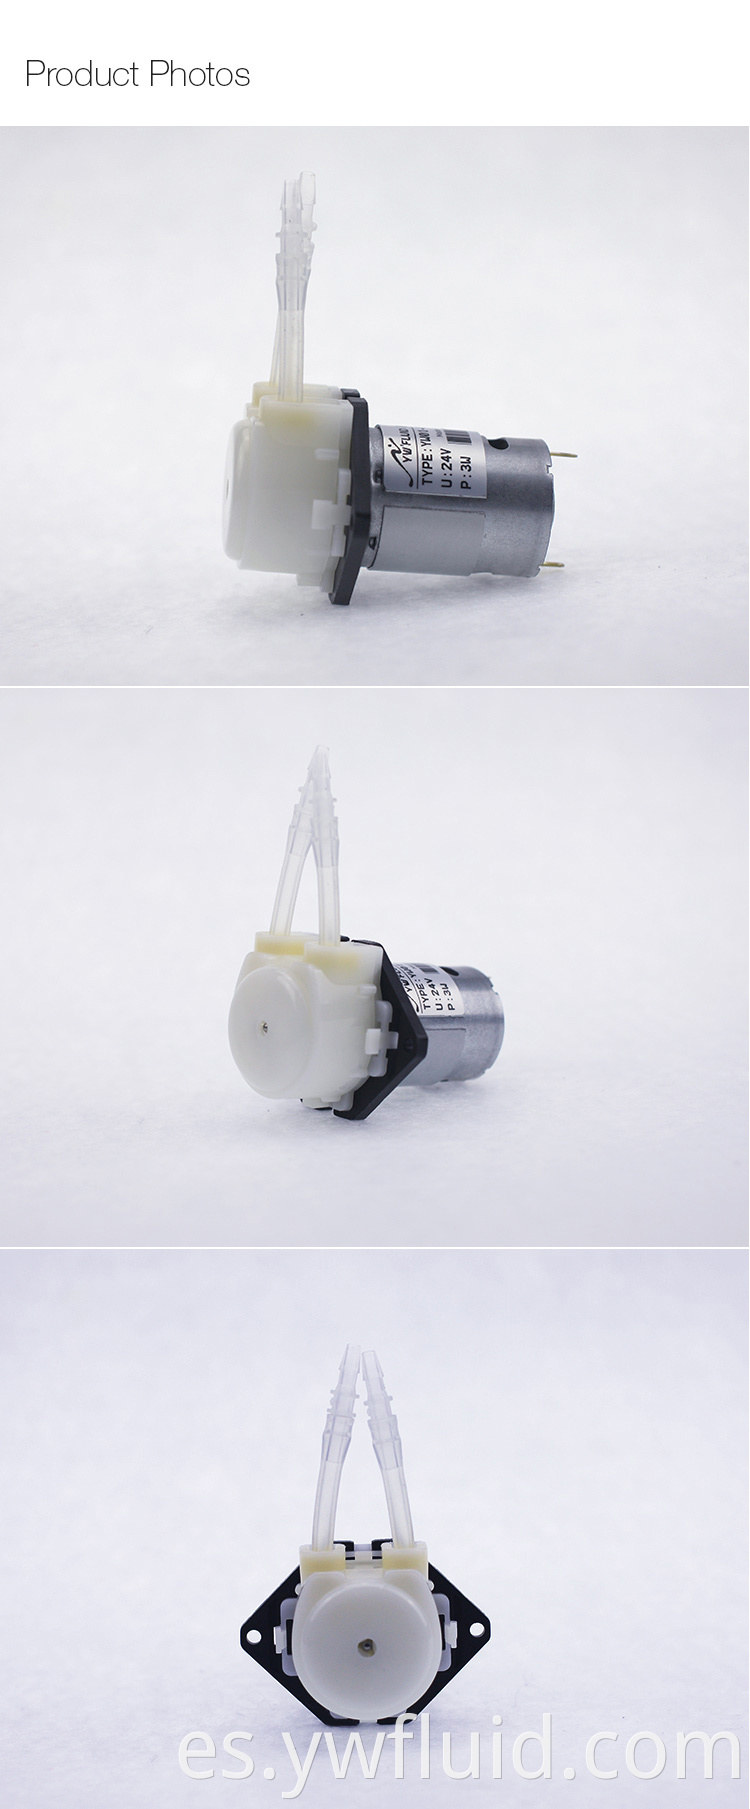 Bomba peristáltica del motor del cepillo dc de YWfluid con alto rendimiento usada para el llenado de succión de transferencia de líquido